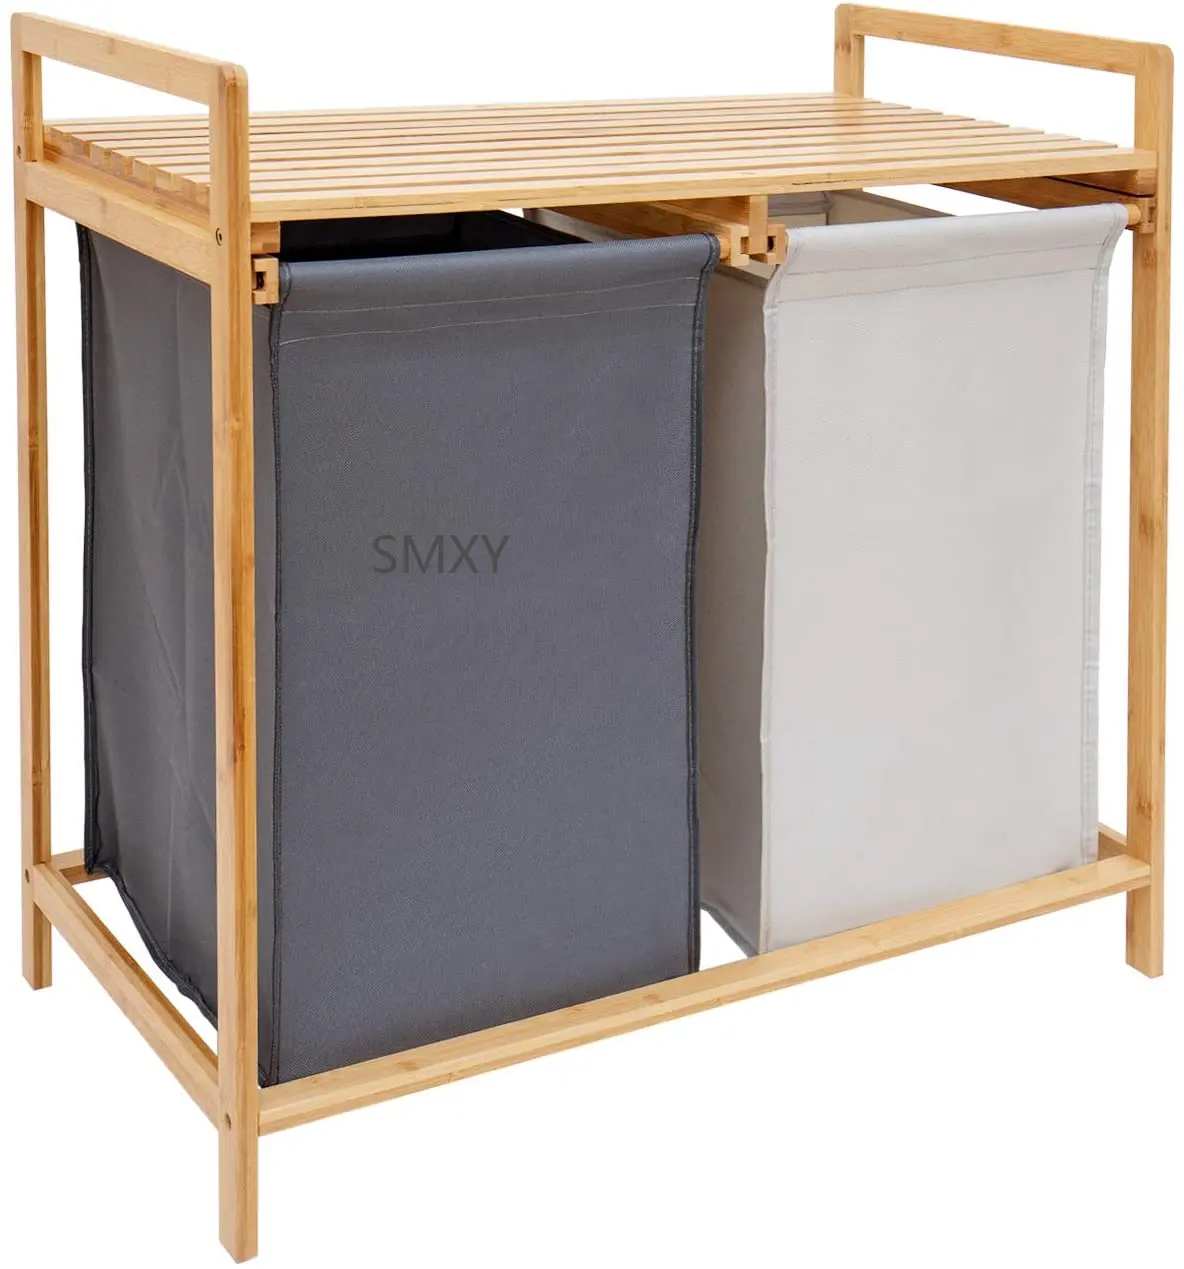 Cesto de bambú para la ropa sucia, estante de 2 secciones con forro extraíble, compartimentos duales, organizador y almacenamiento